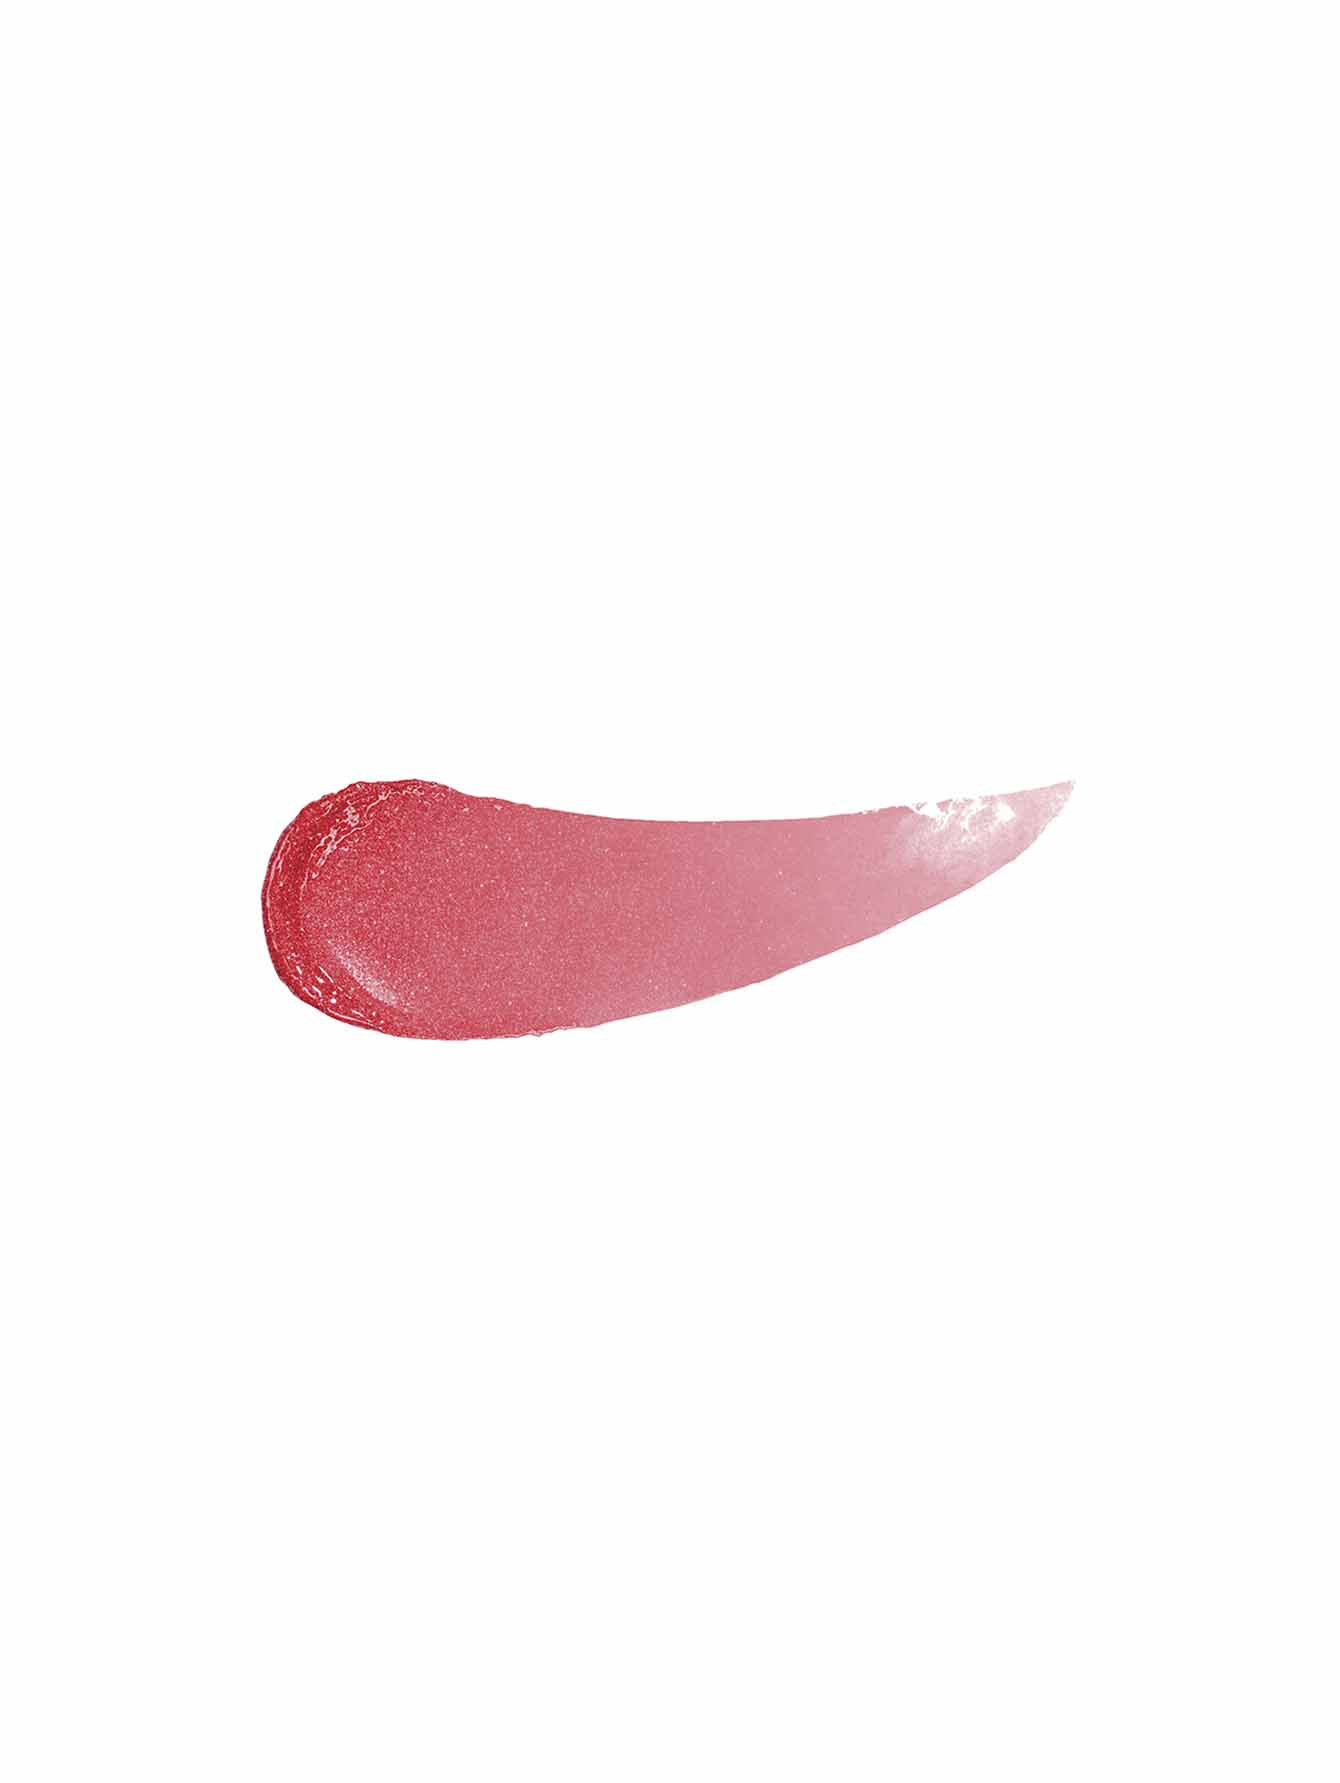 Сверкающая фитопомада Phyto Rouge, 40 Sheer Cherry, 3 г - Обтравка1